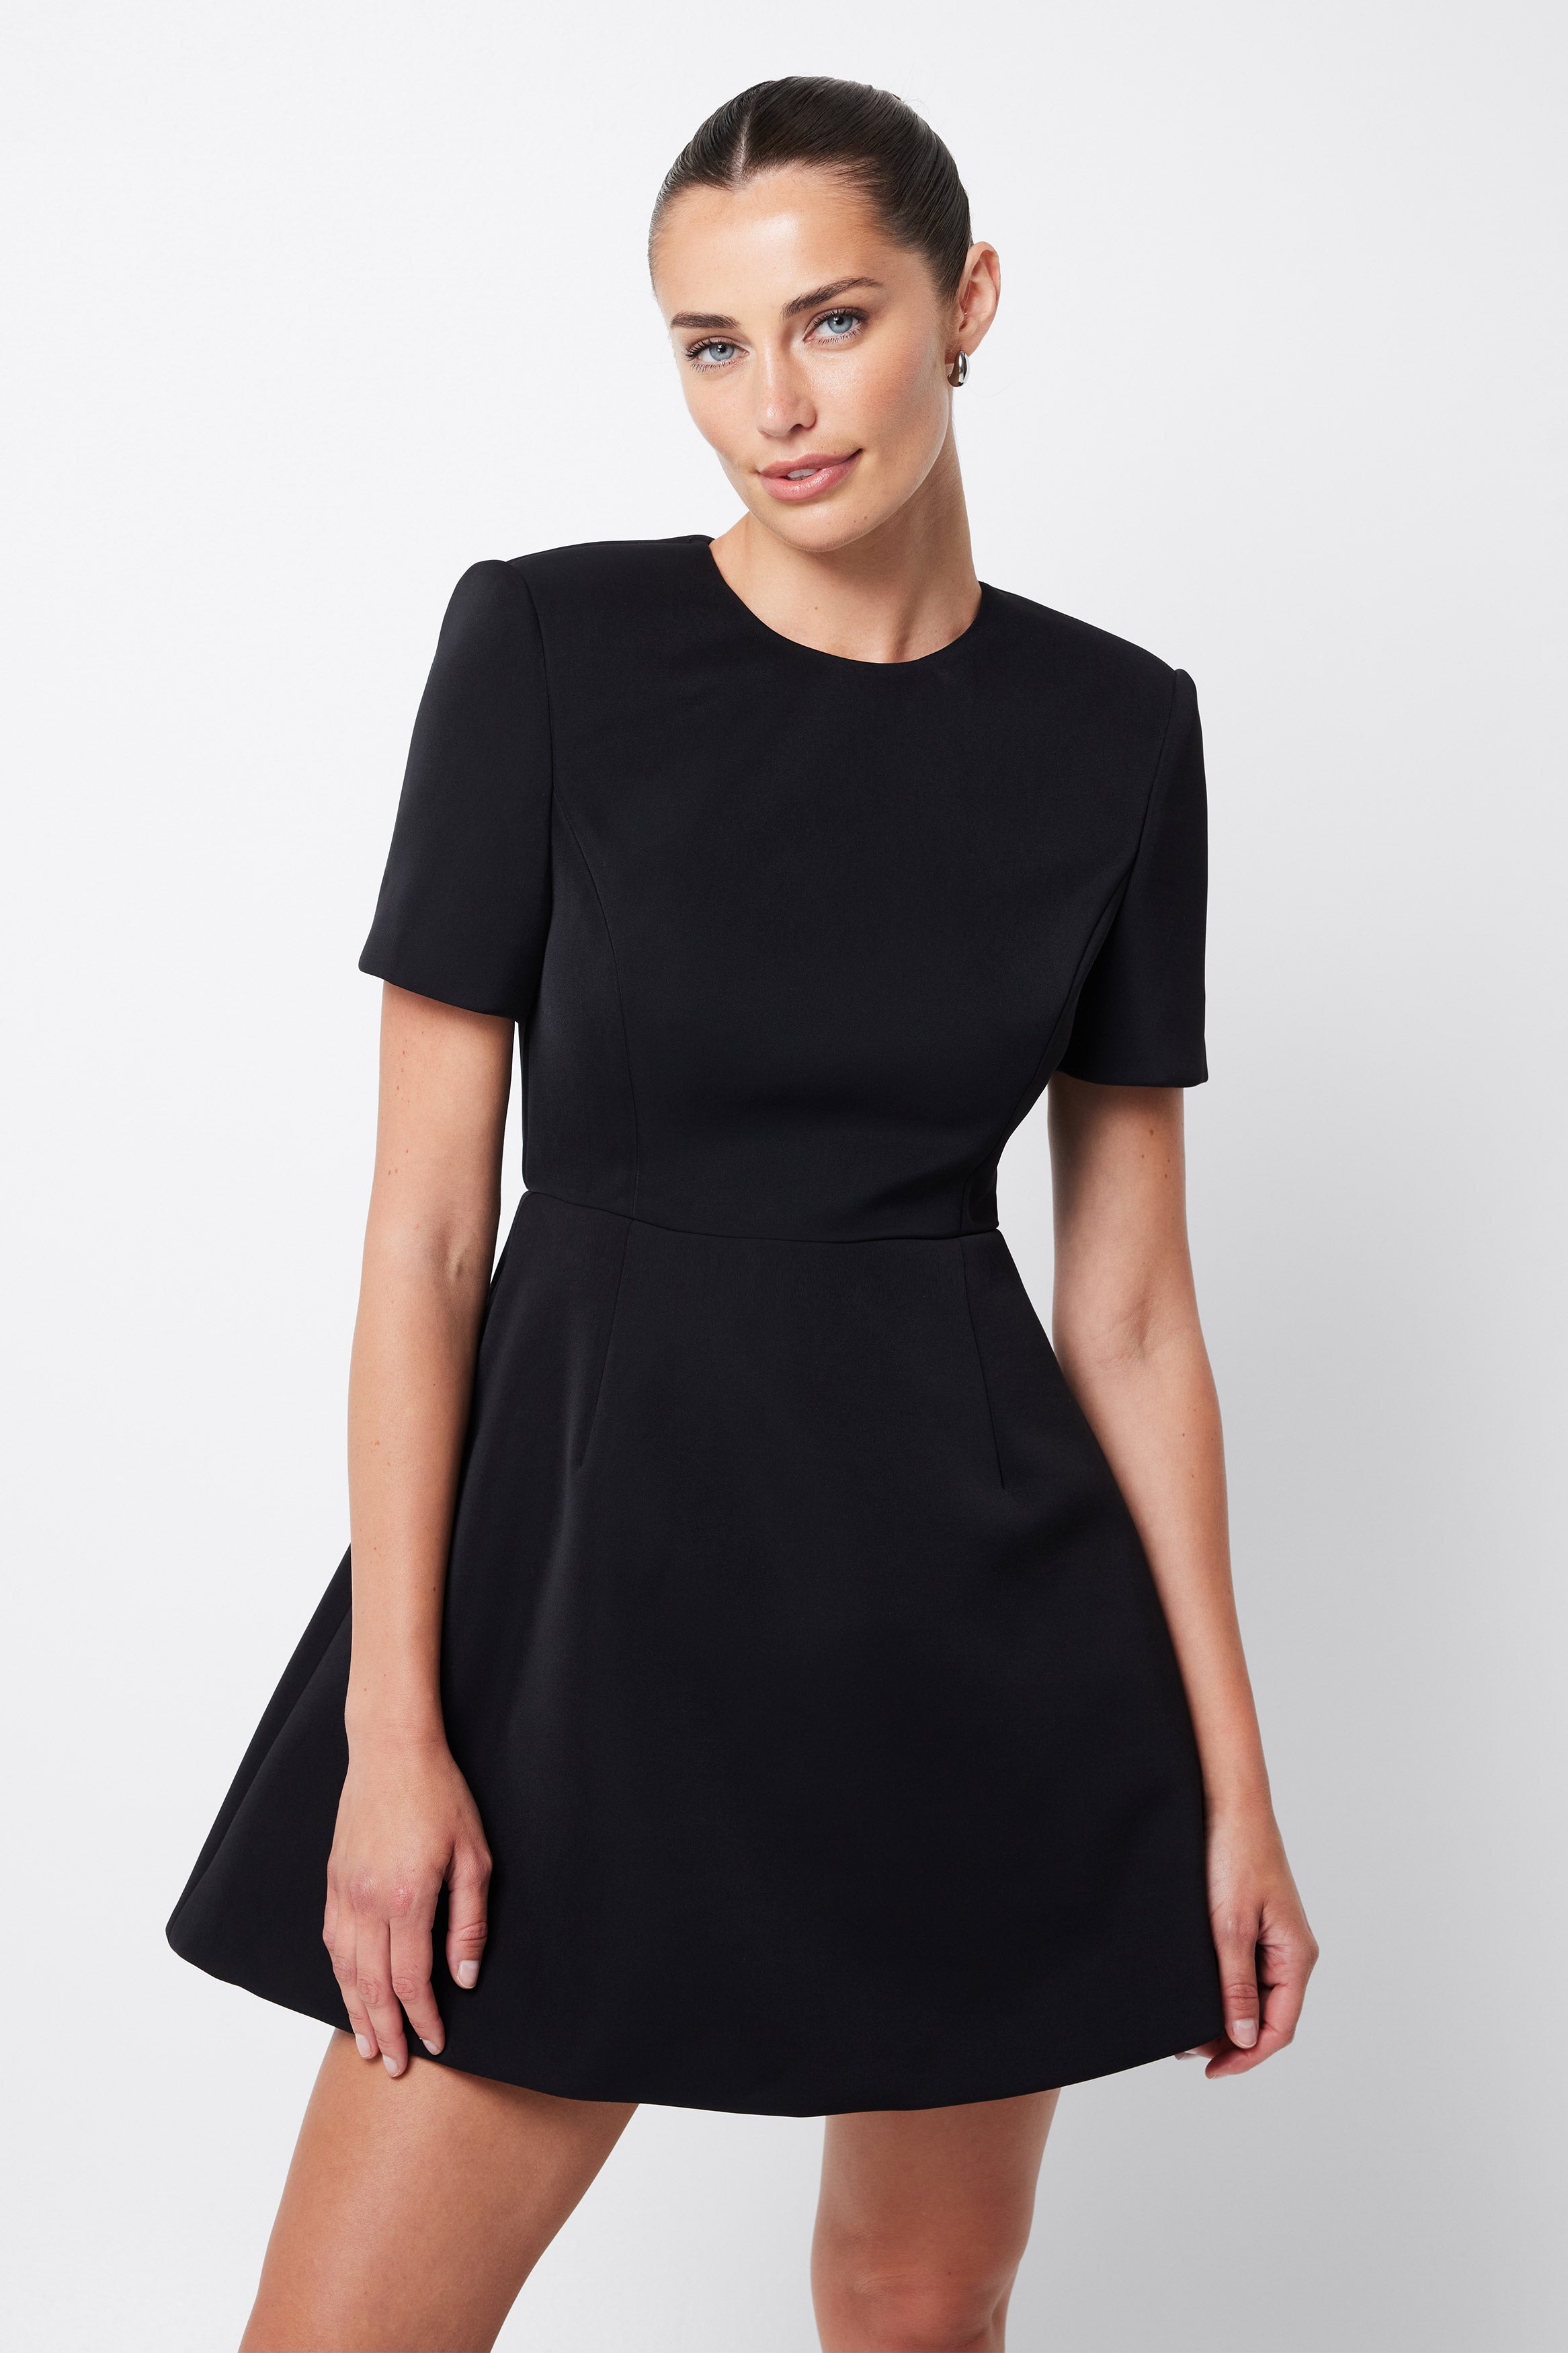 Allure Mini Dress - Black